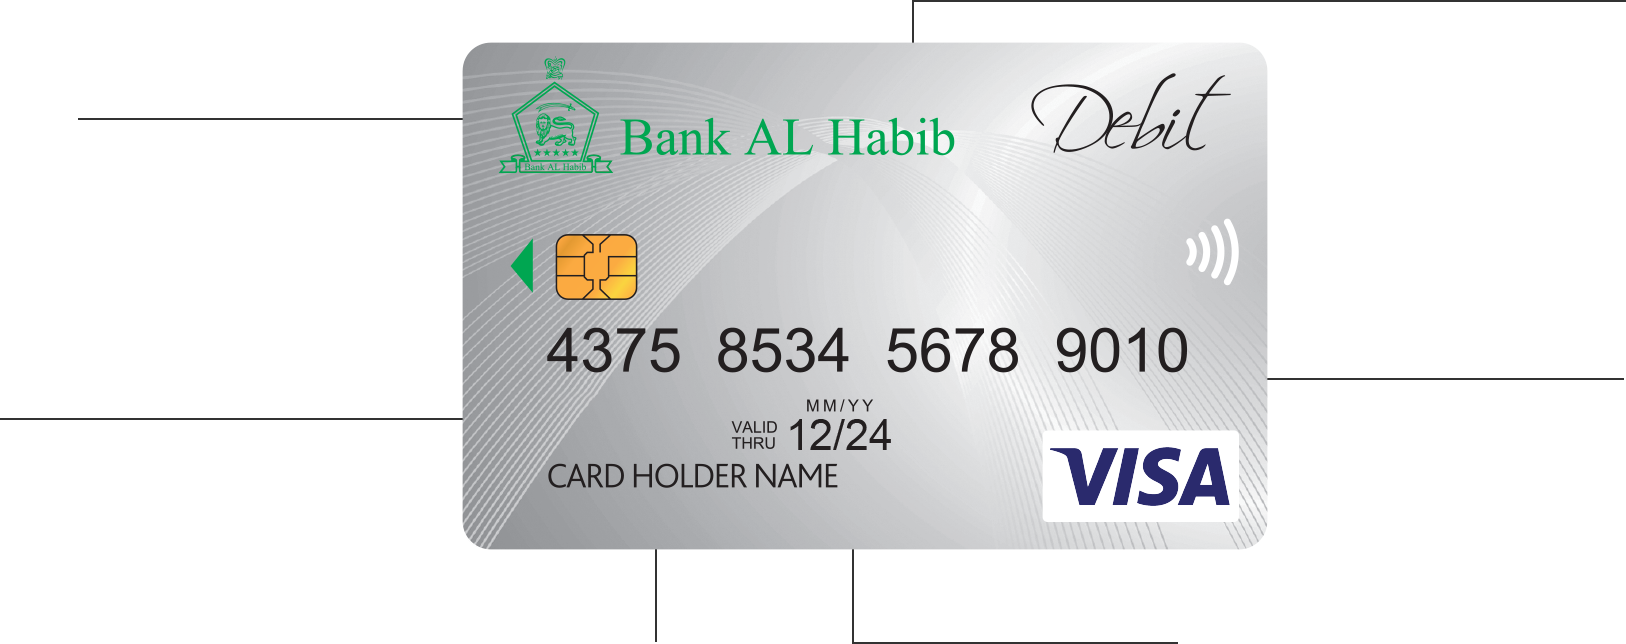 Bank Al Habib Debit Cards